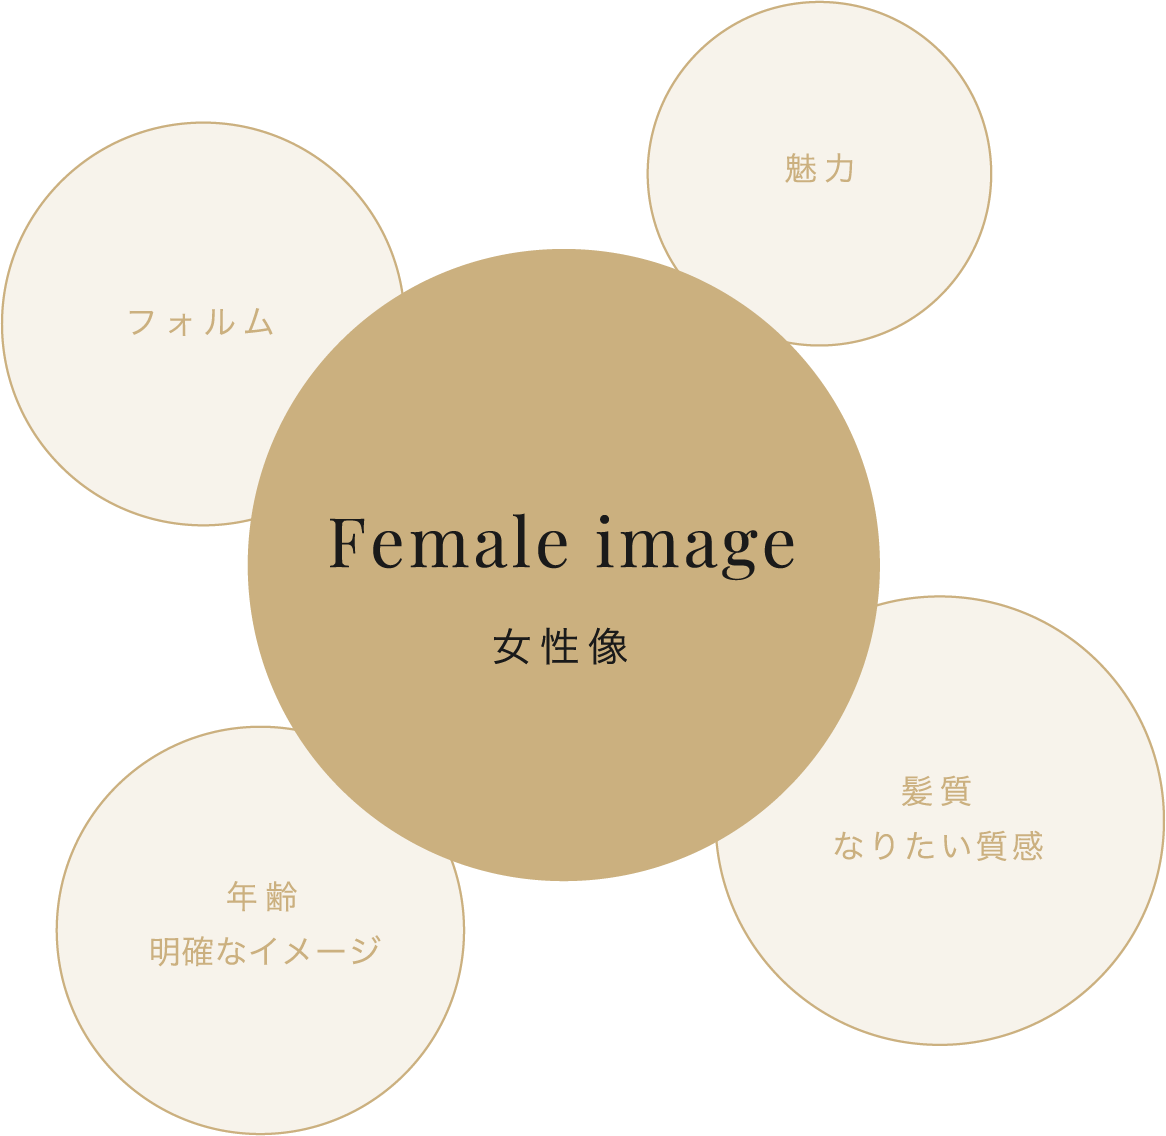 Female image